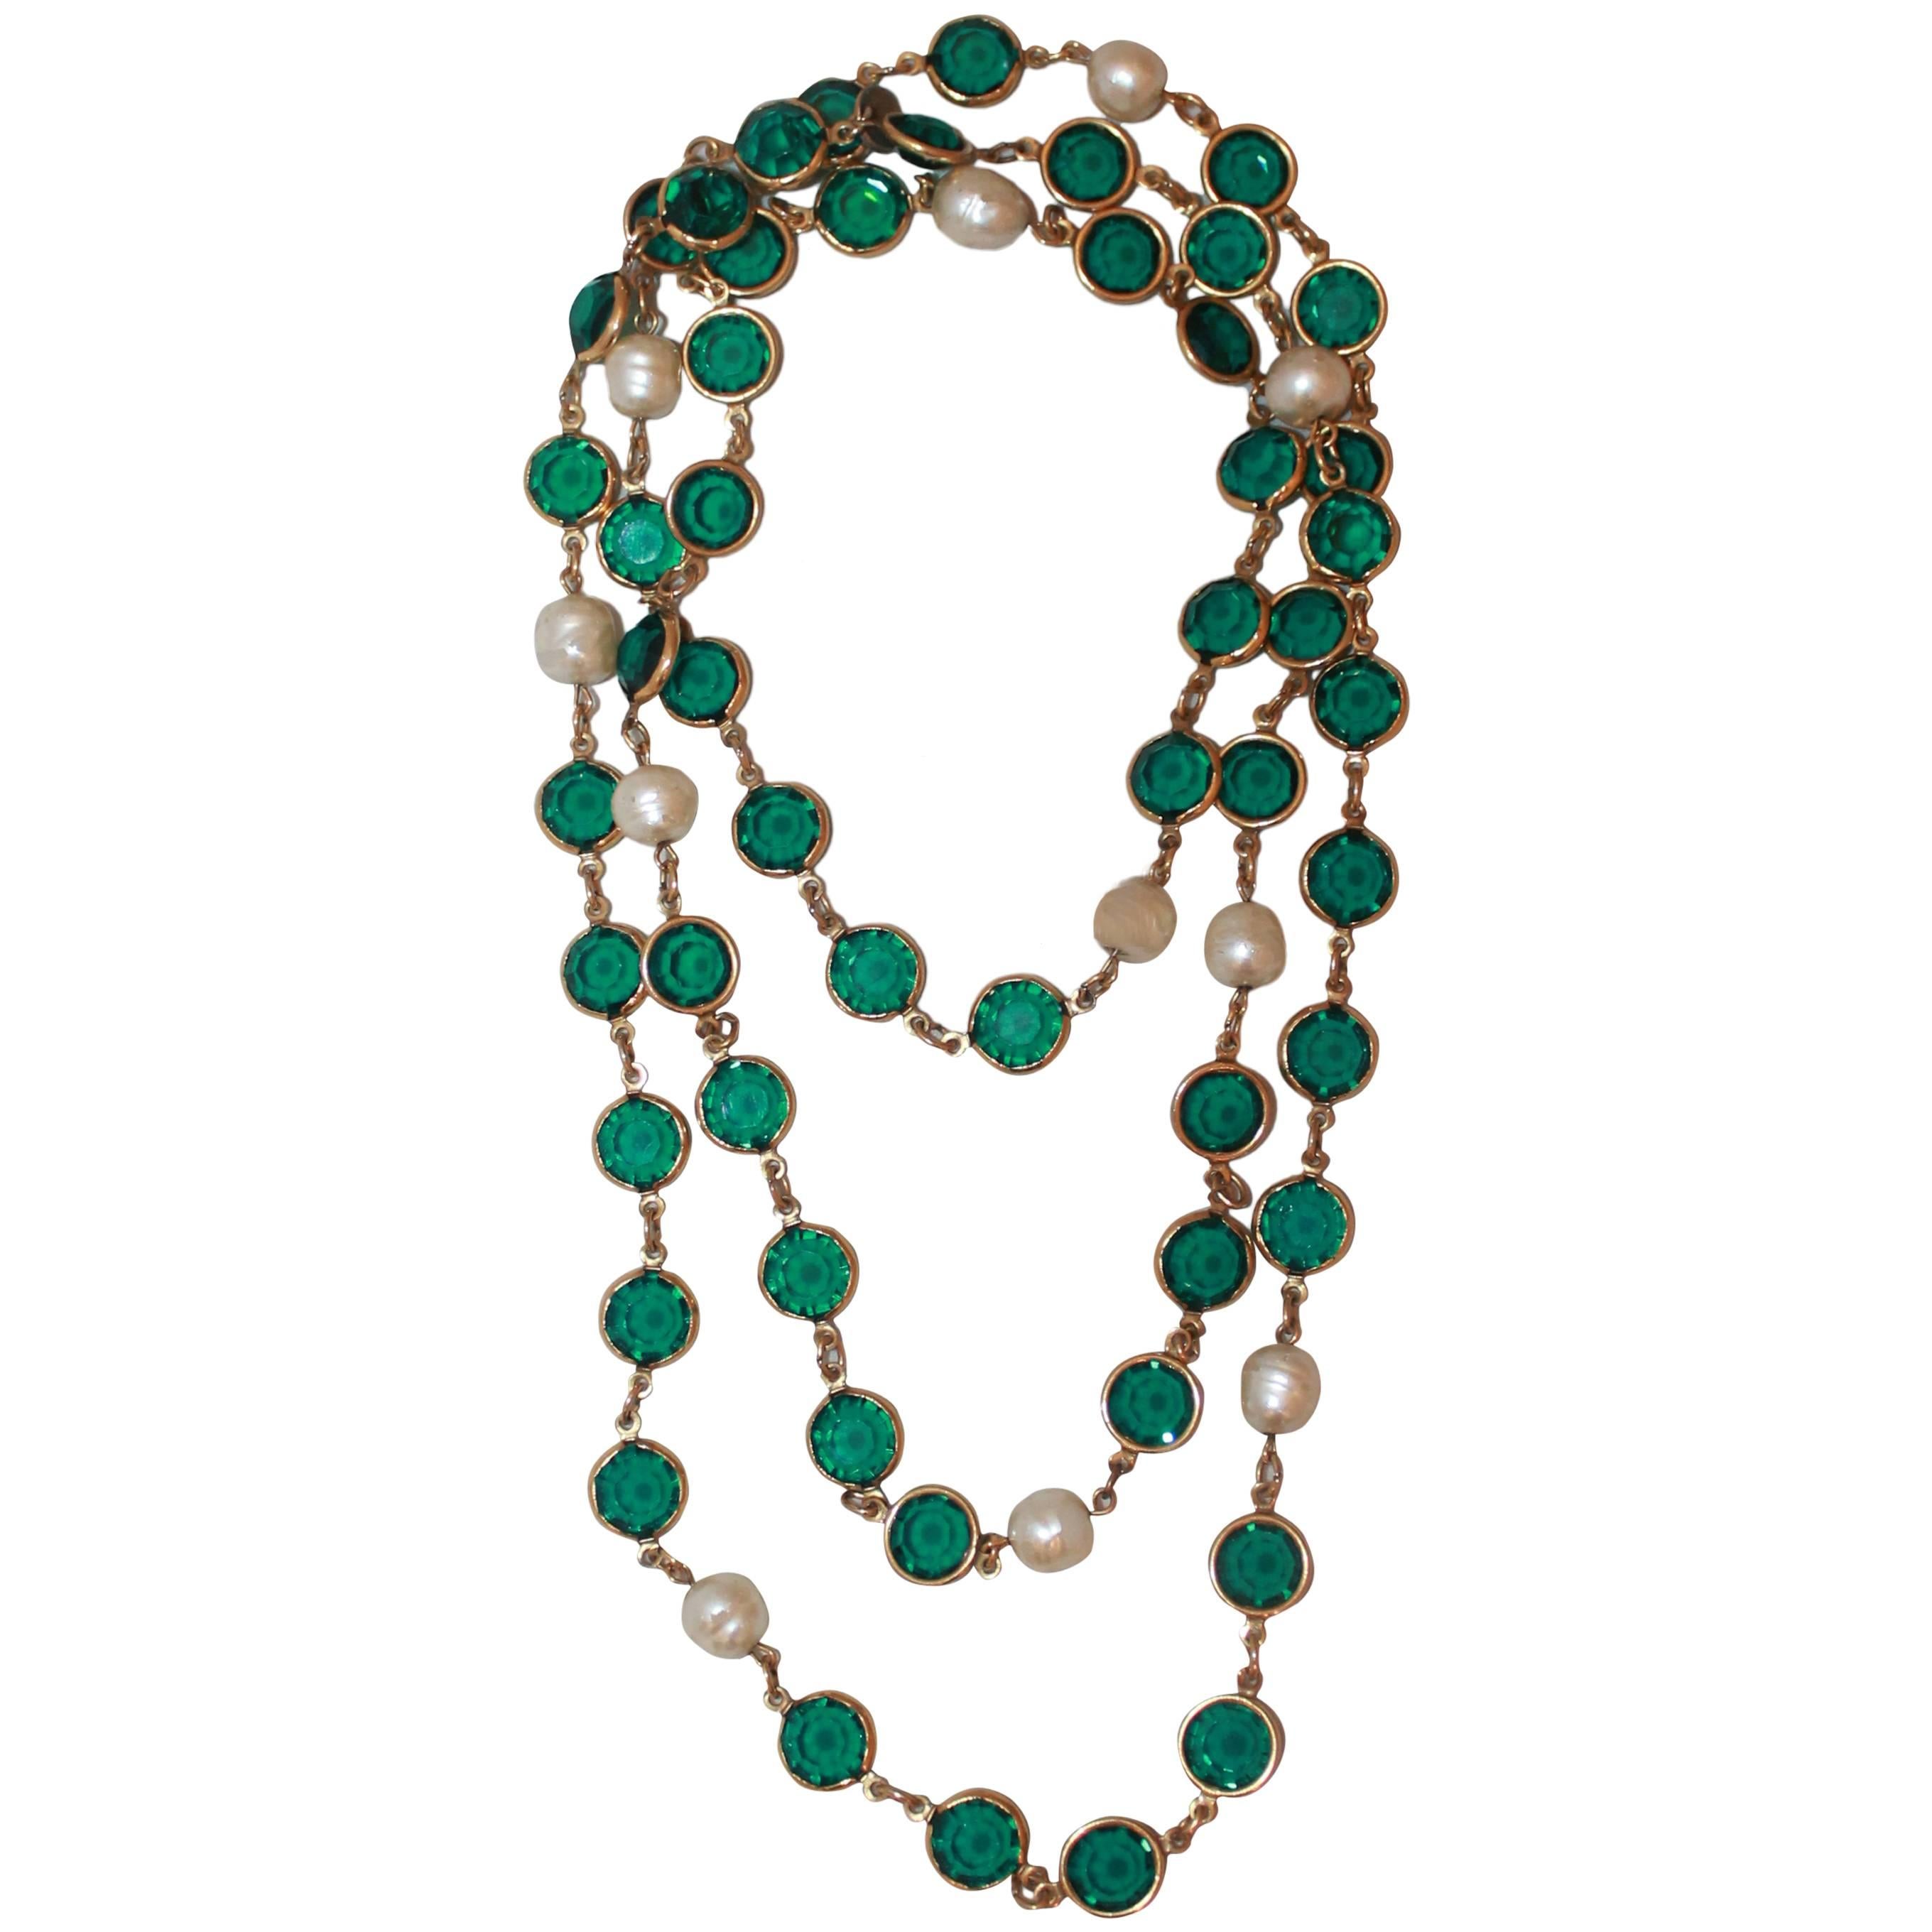 Chanel Vintage "Sautoir" Necklace w/ Green Stones & Pearls - Circa 1987